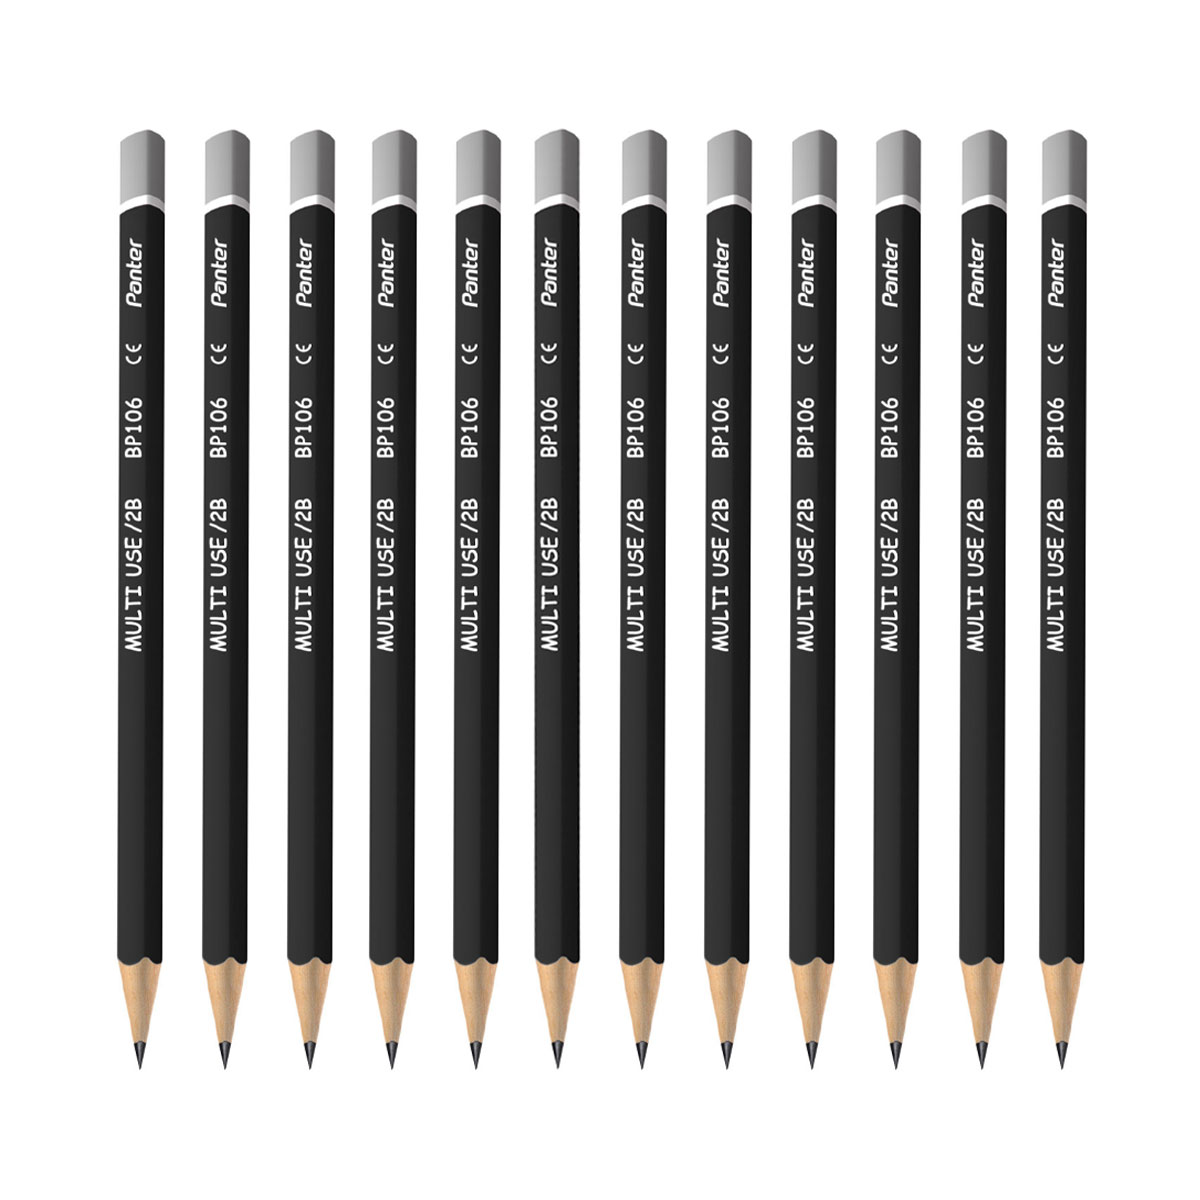 مداد مشکی پنتر مدل BP106 بسته 12 عددی